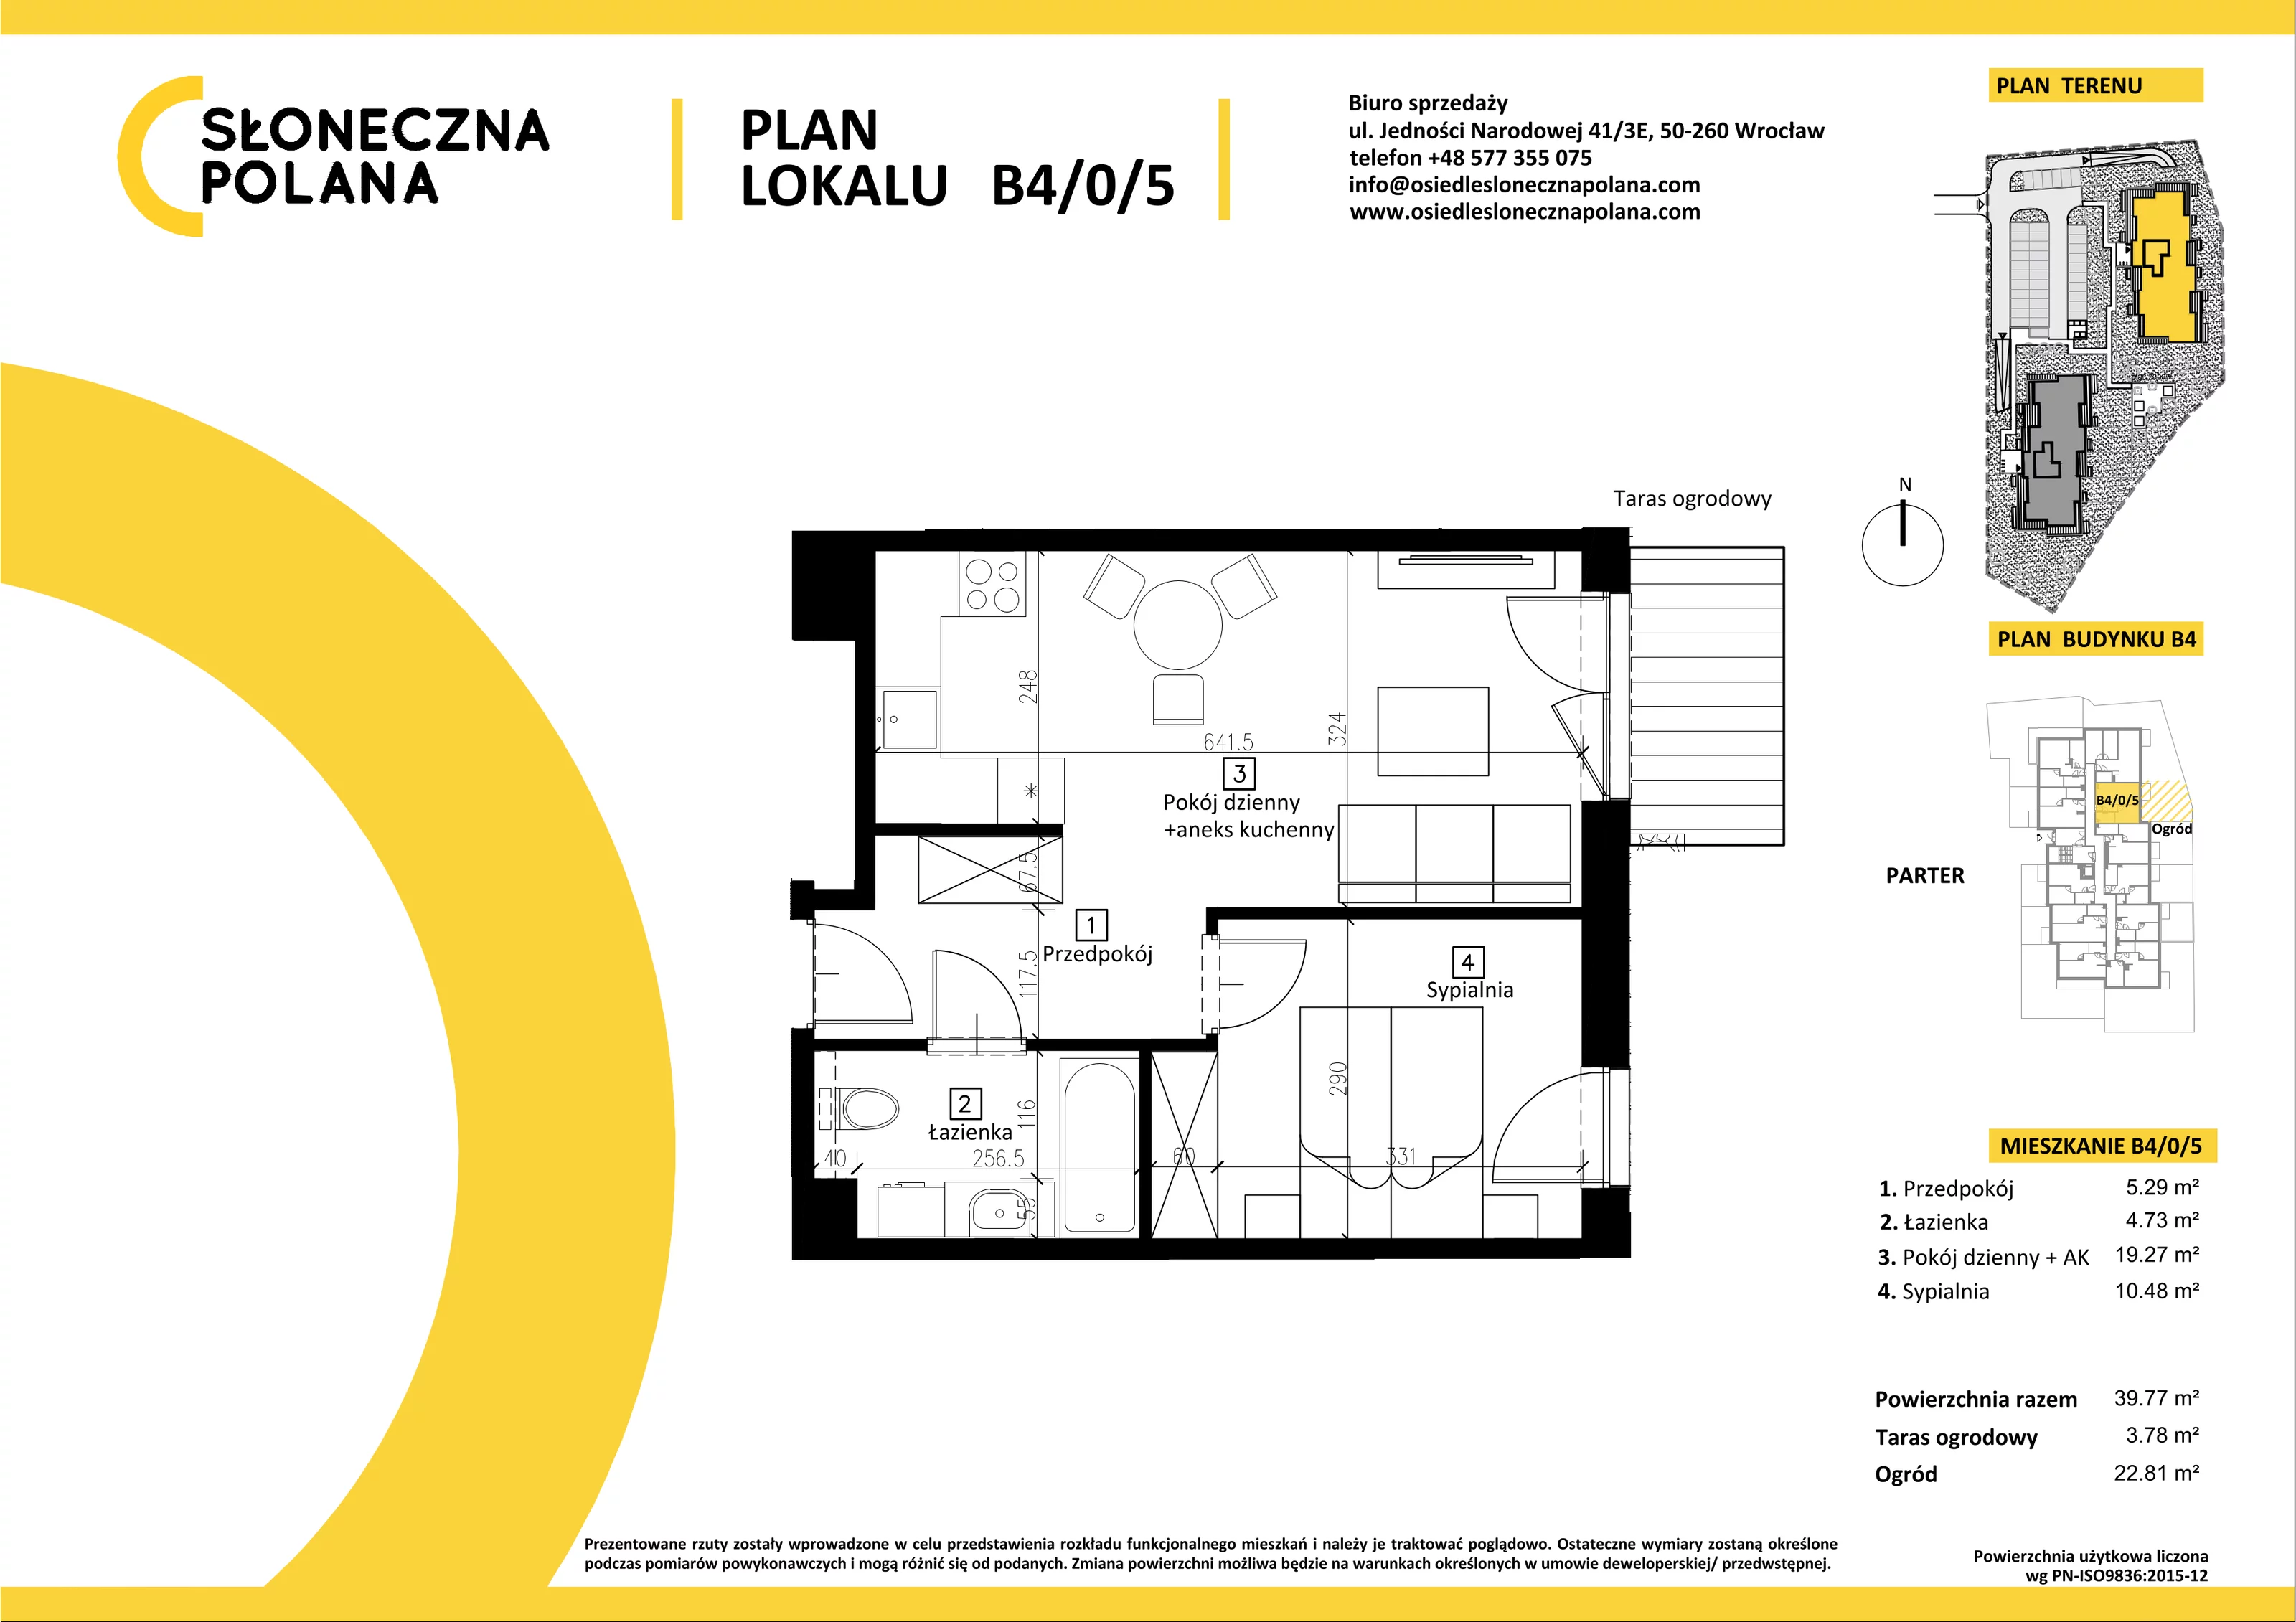 Mieszkanie 39,77 m², parter, oferta nr B4/0/5, Słoneczna Polana, Kudowa-Zdrój, ul. Bluszczowa